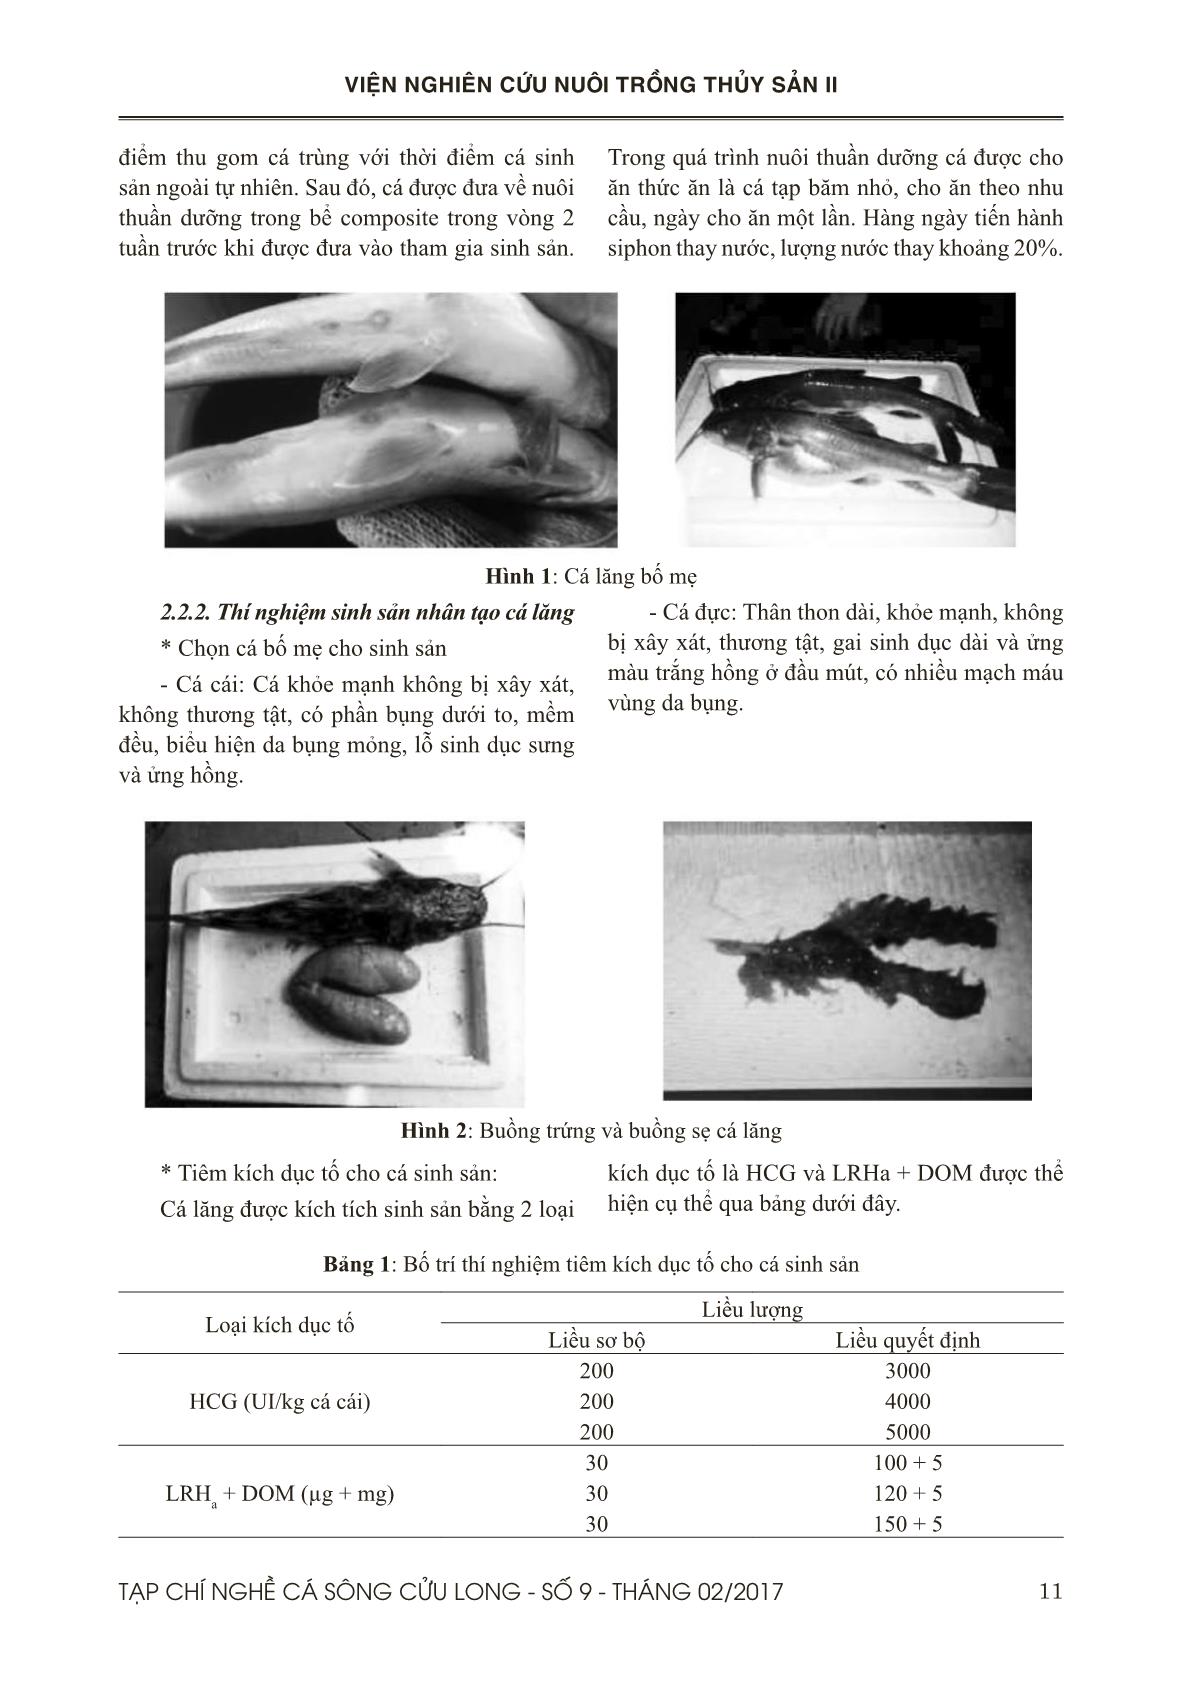 Sinh sản nhân tạo cá lăng vàng (Hemibagrus nemurus Valenciennes, 1839) tại Đồng Tháp trang 2